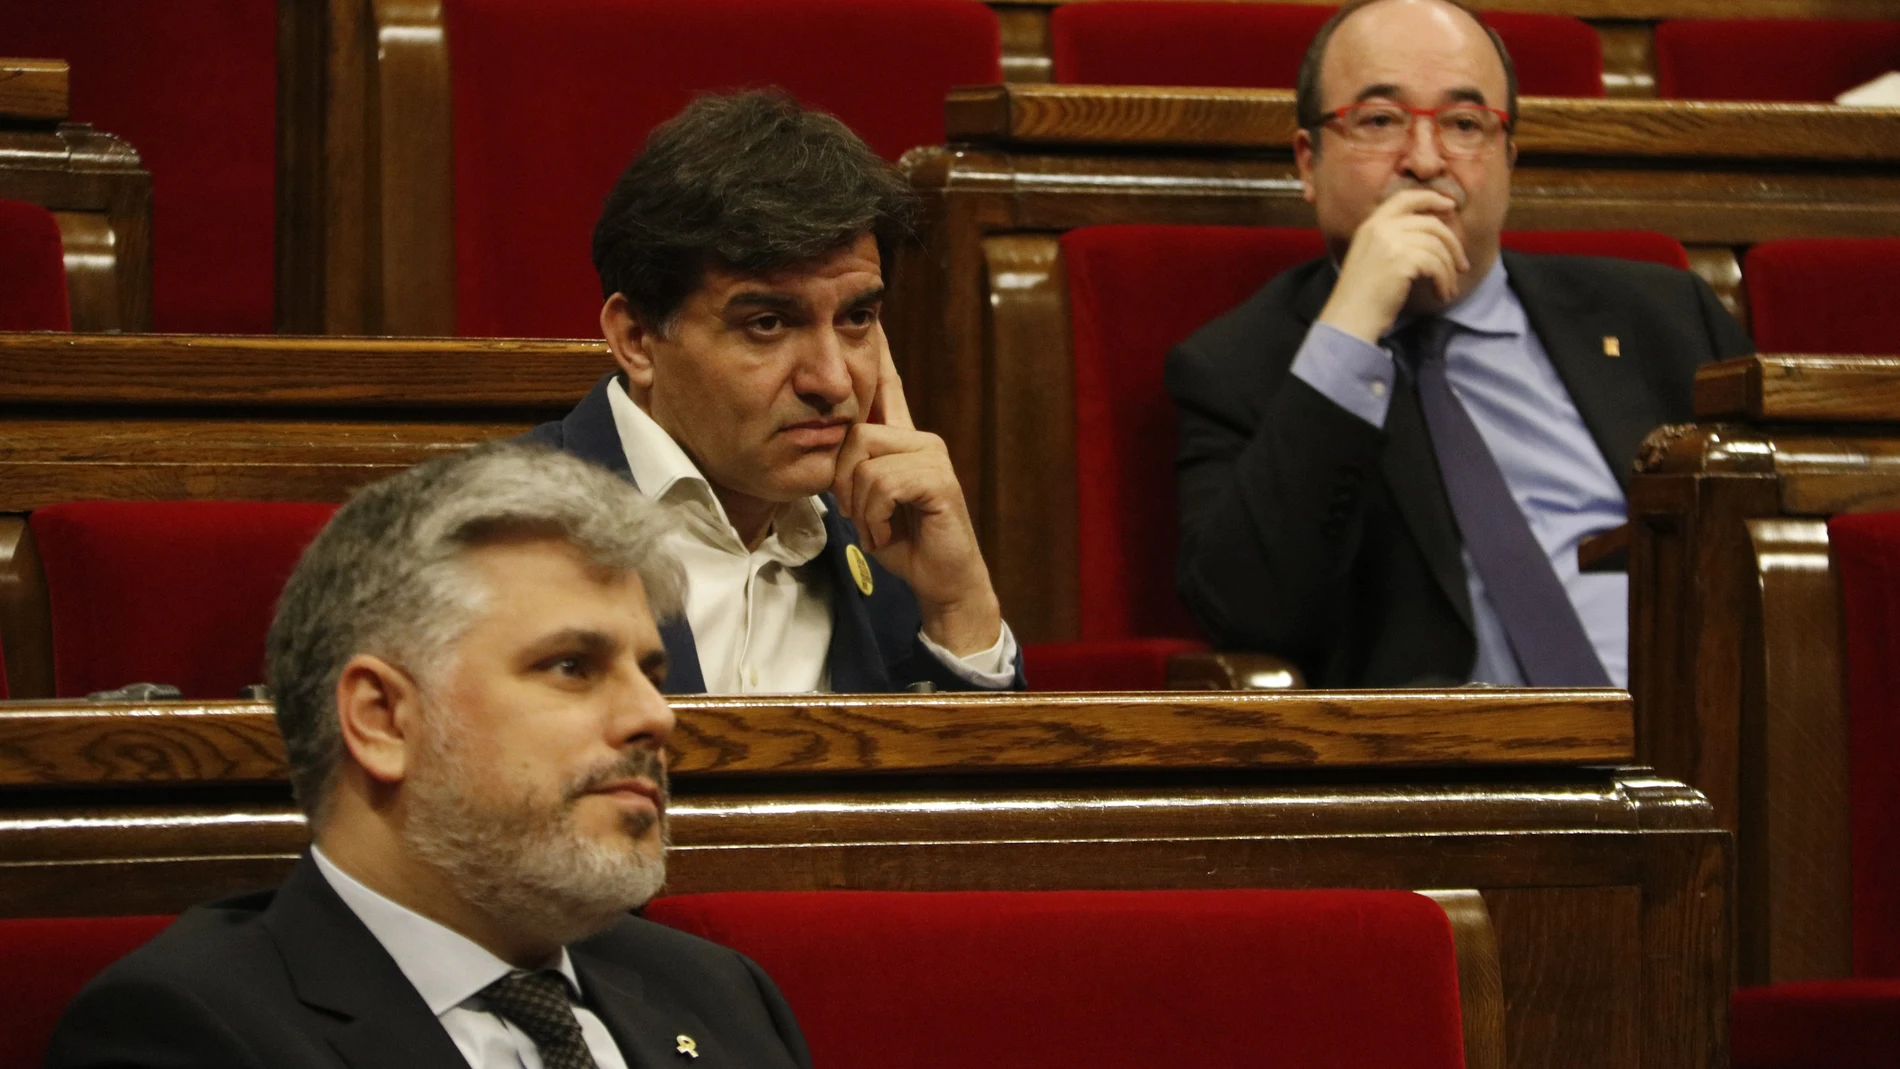 Los diputados Albert Batet (JxCat), Sergi Sabrià (ERC) y Miquel Iceta (PSC-Units) en la sesión de control del Parlament en una imagen reciente